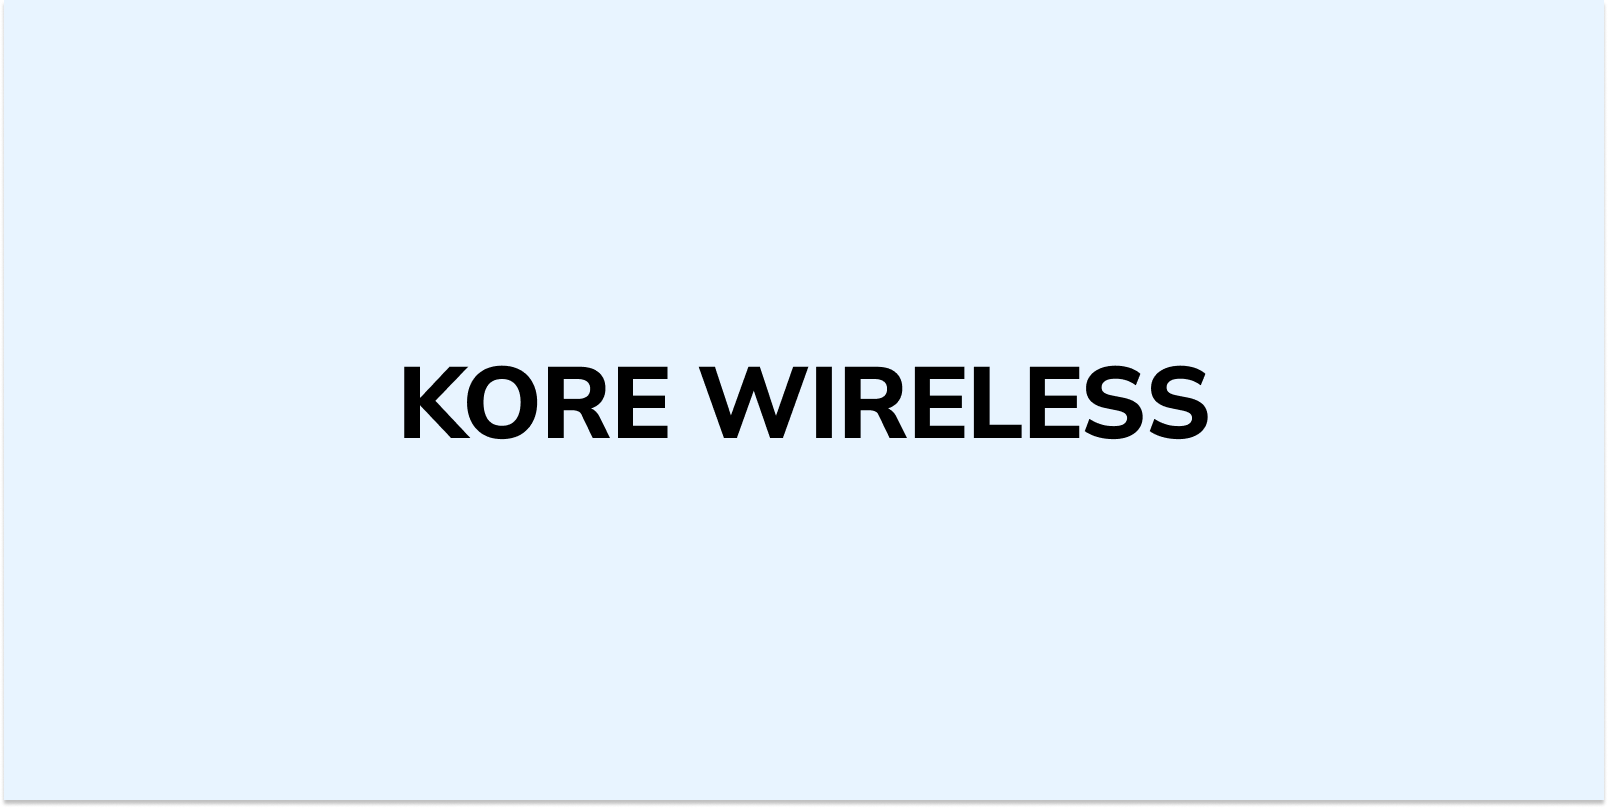 kore wireless